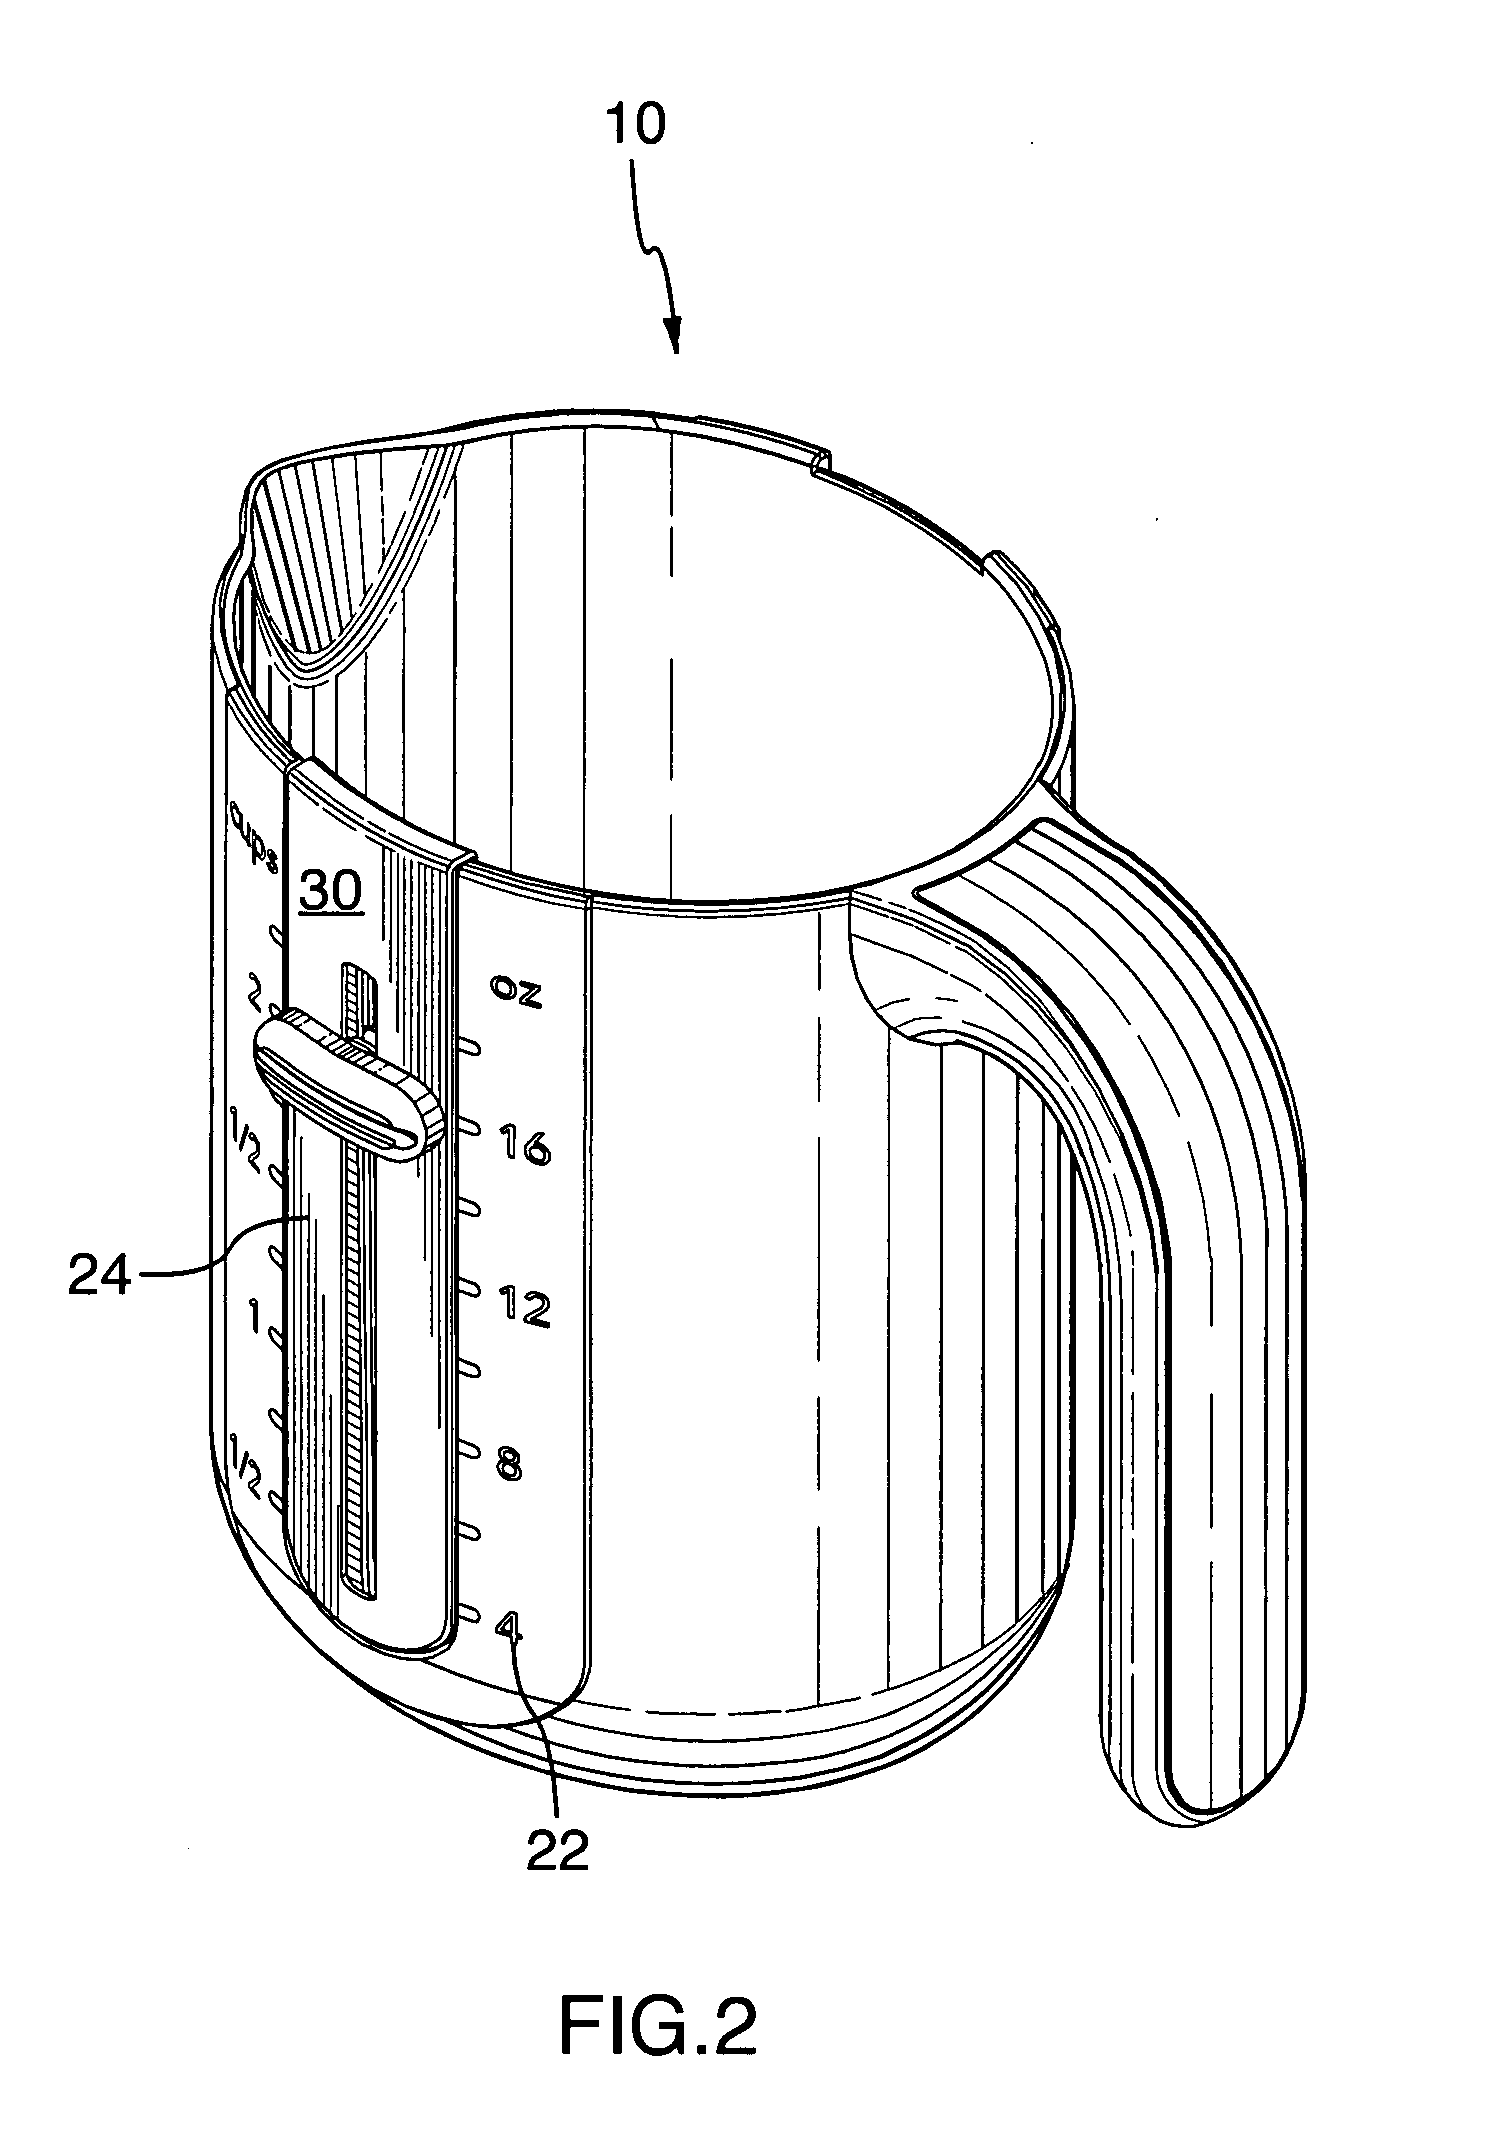 Liquid measuring vessel